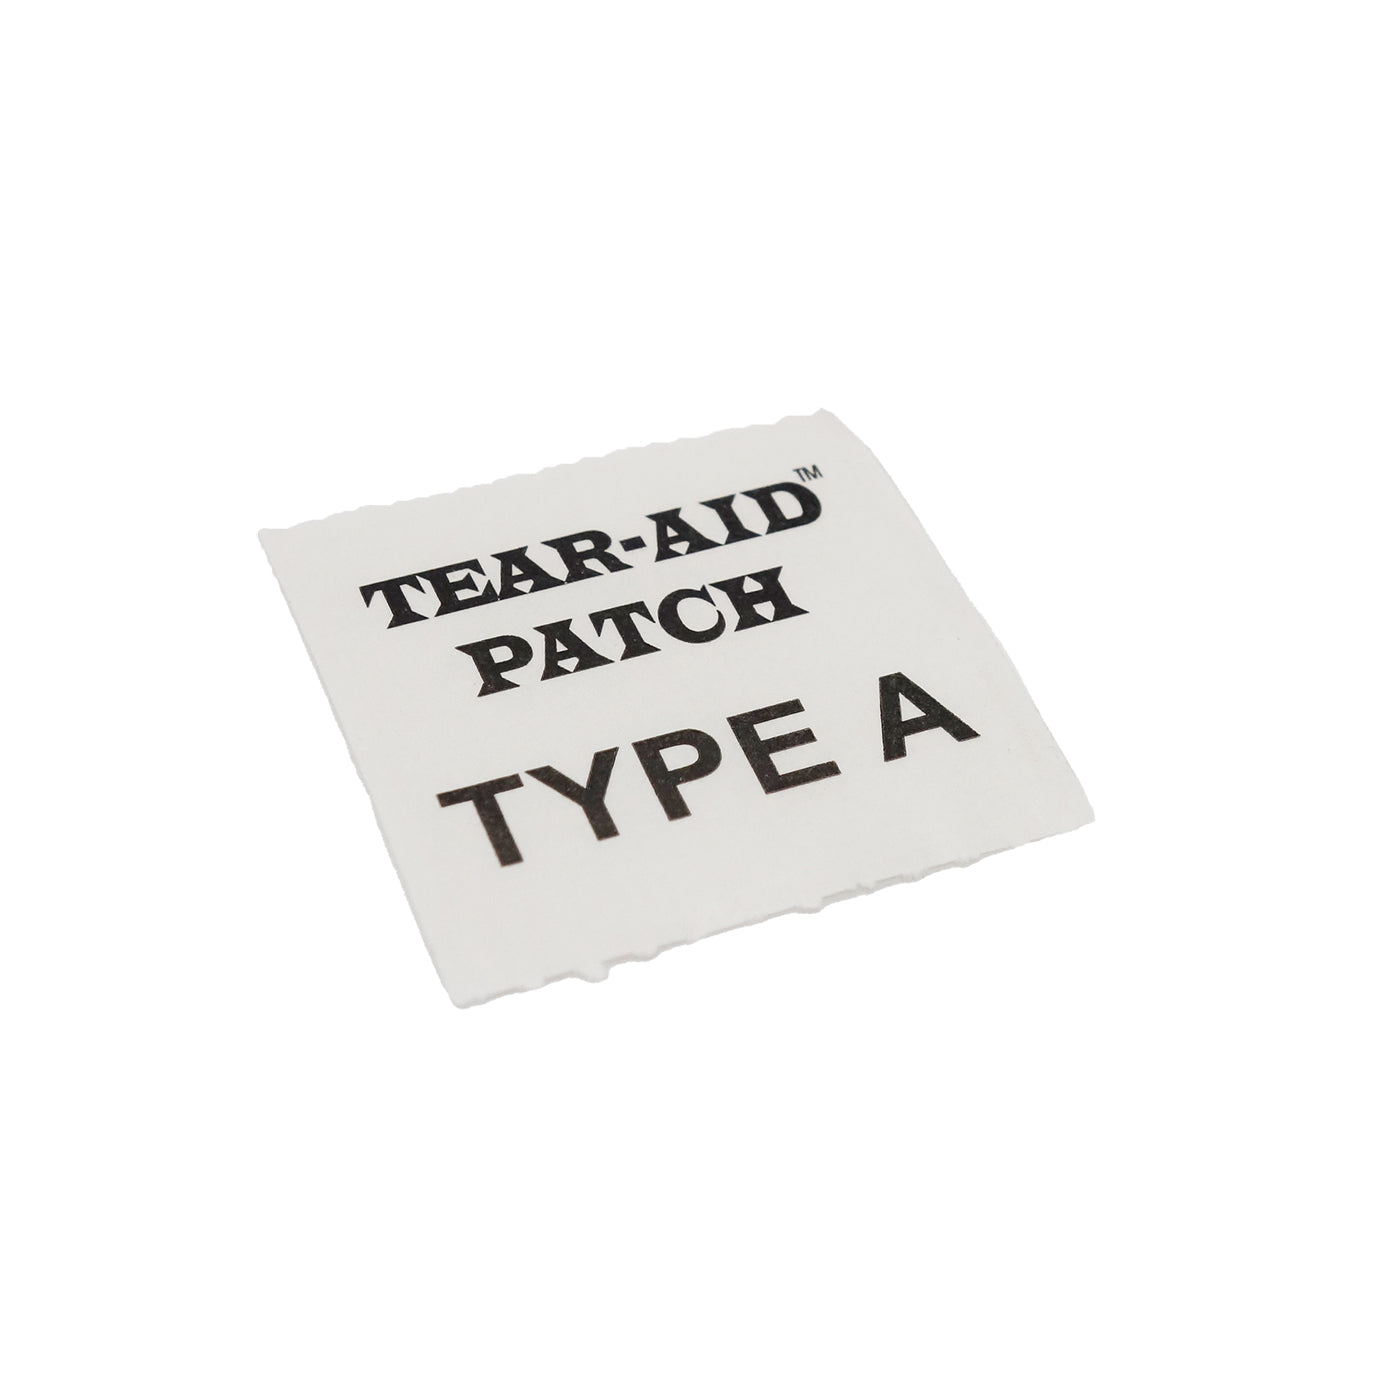 Tear-Aid Patch